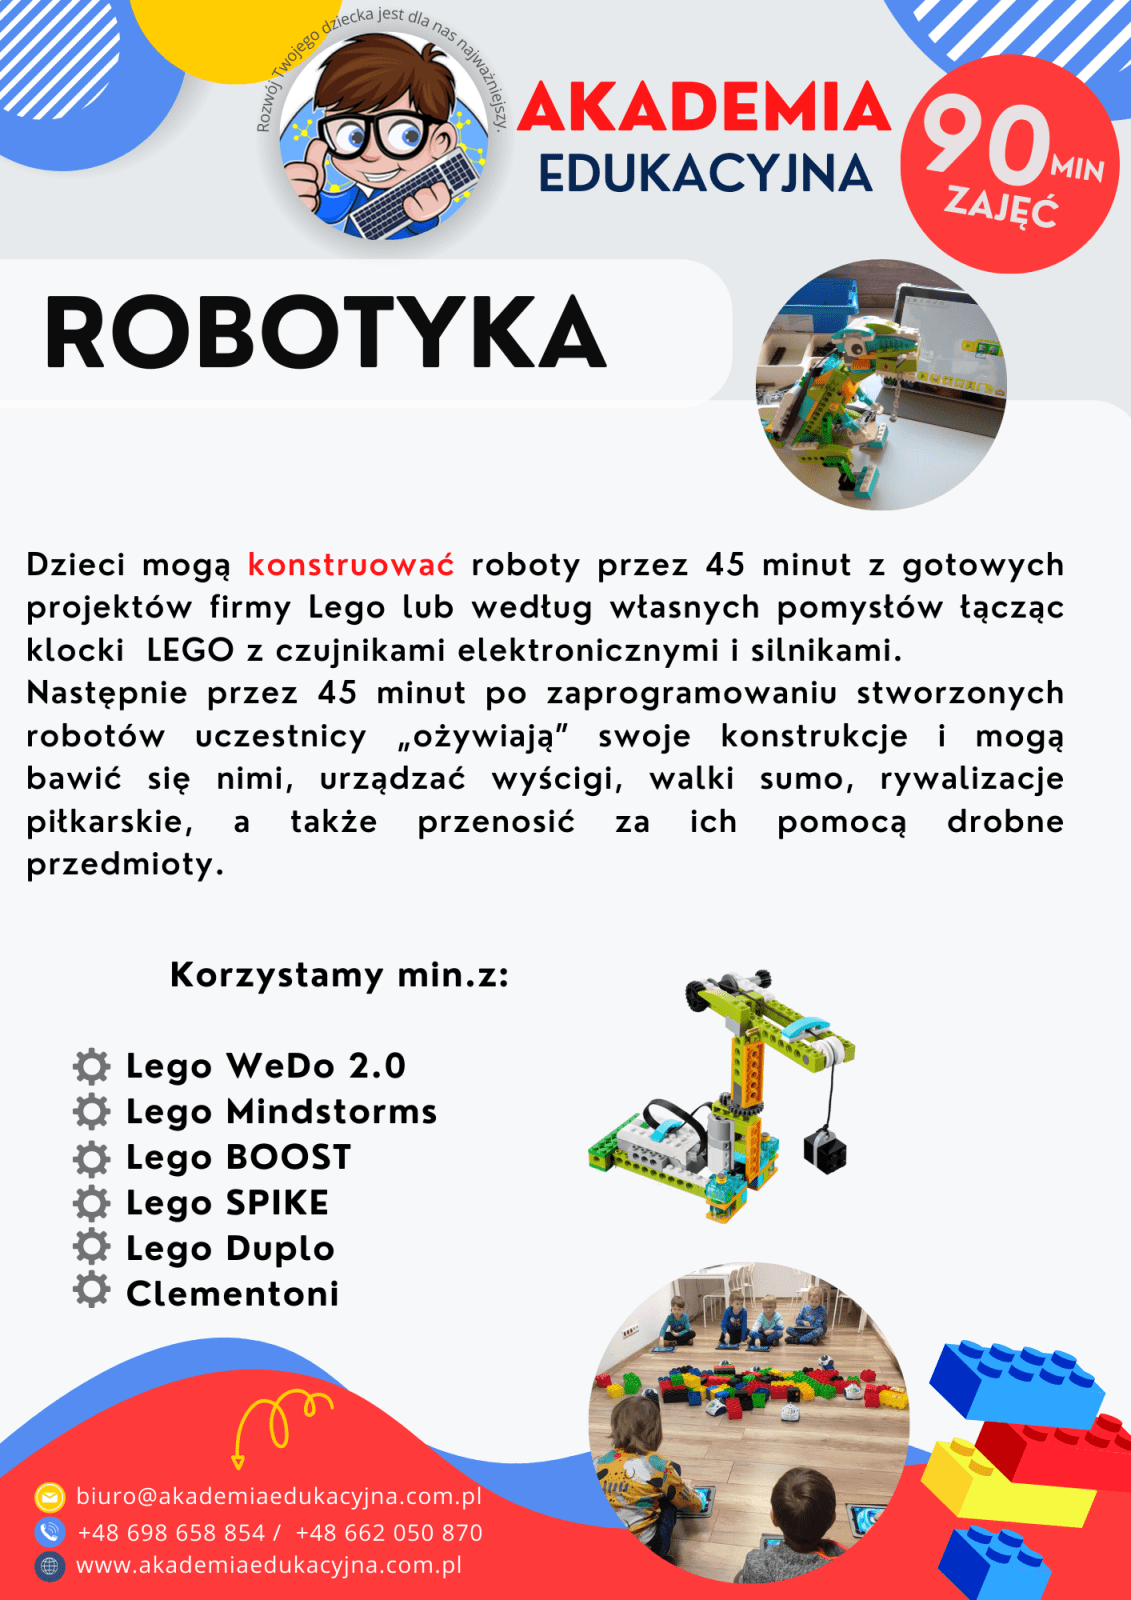 ROBOTYKA 1 1 1